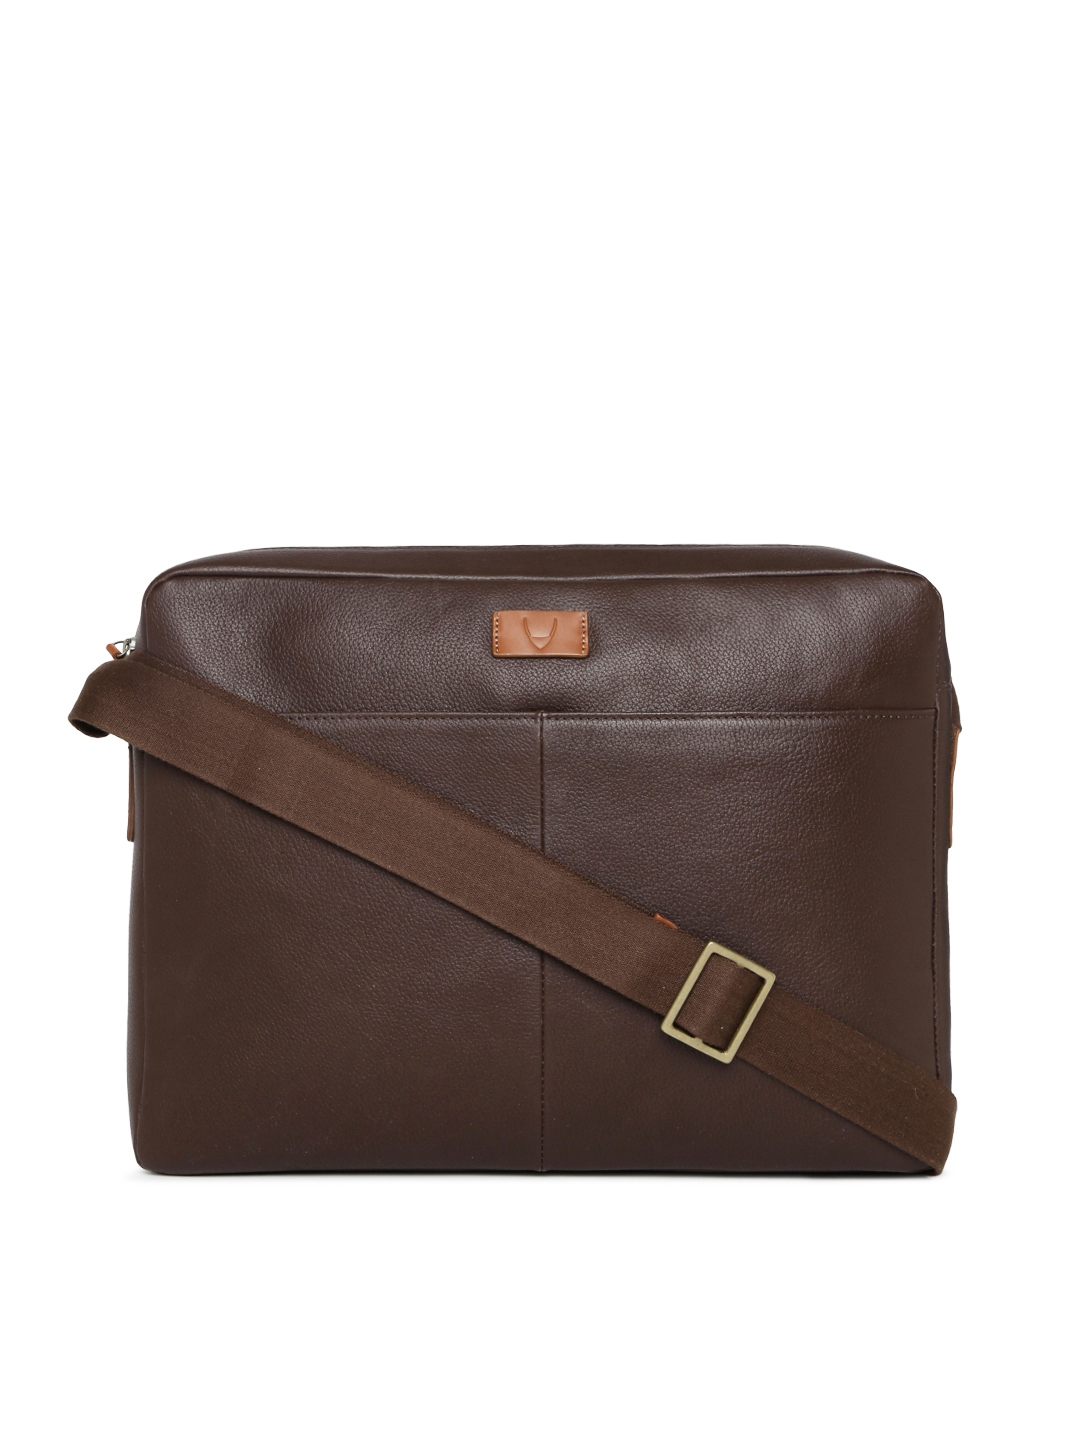 Buy Hidesign Men Brown Solid Leather Laptop Bag - Laptop Bag for Men 10250155 | Myntra